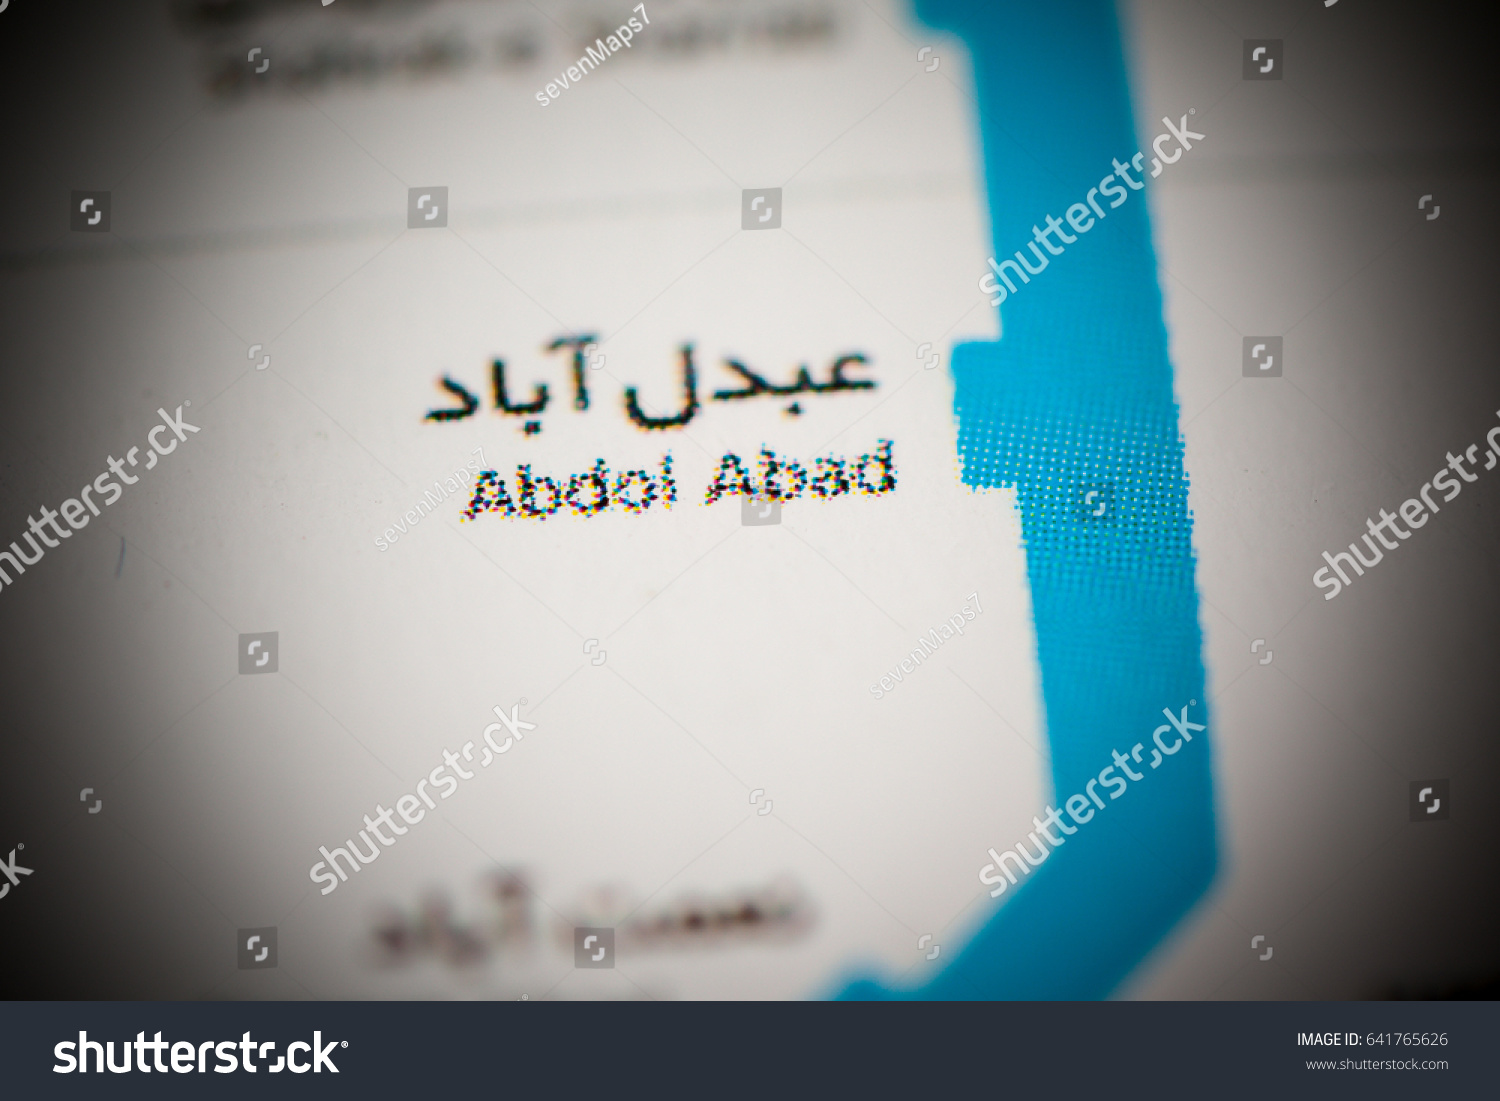 Abdol Abad Station Tehran Metro Map Foto De Stock 641765626 Shutterstock